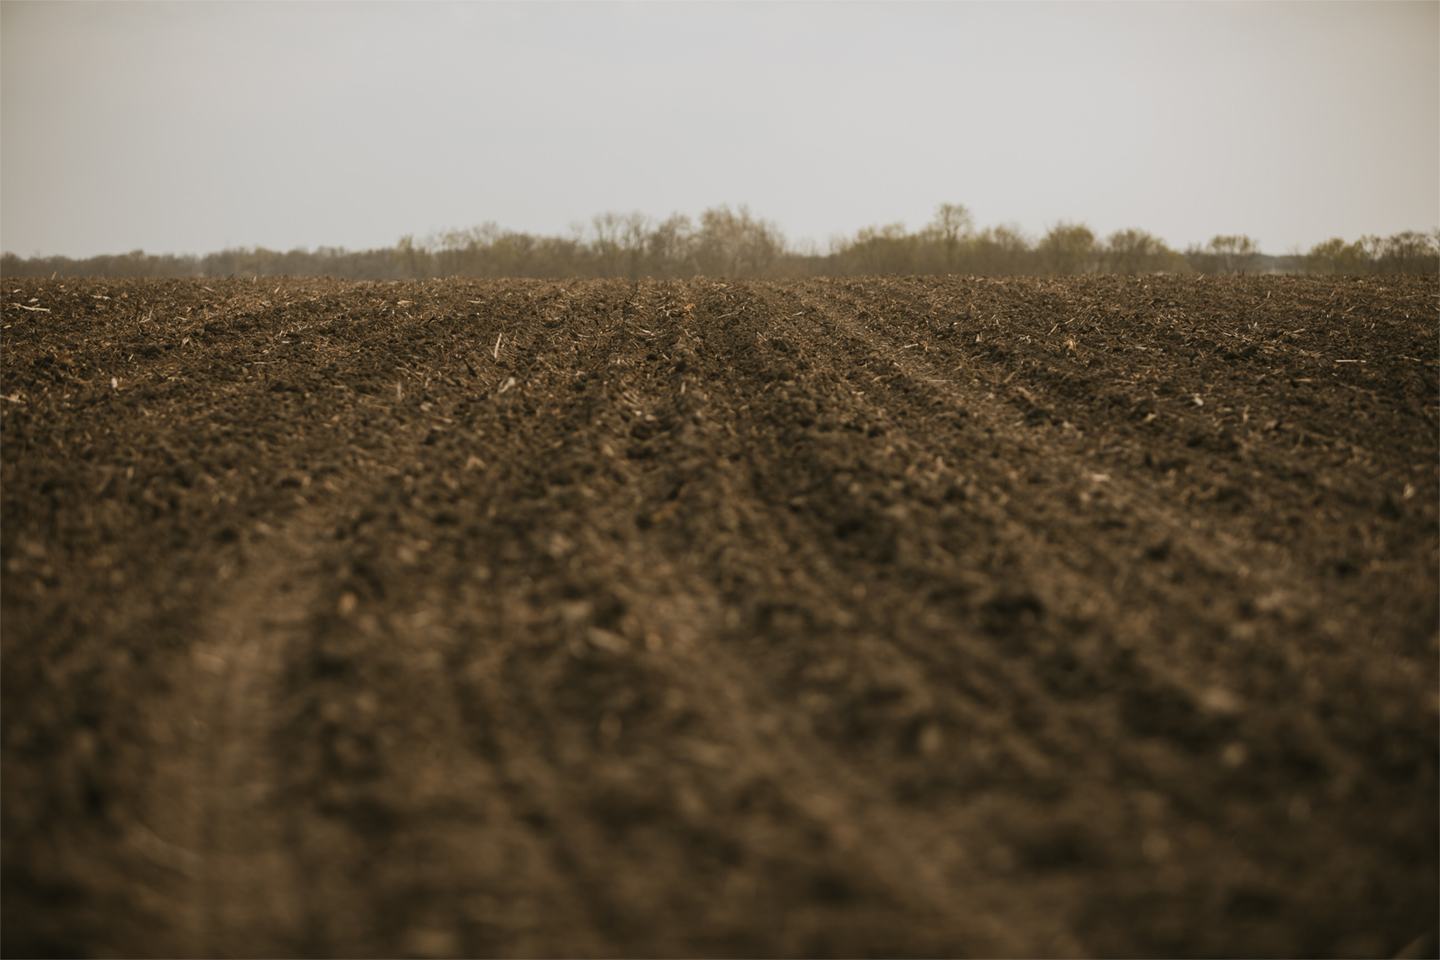 Plowed Field